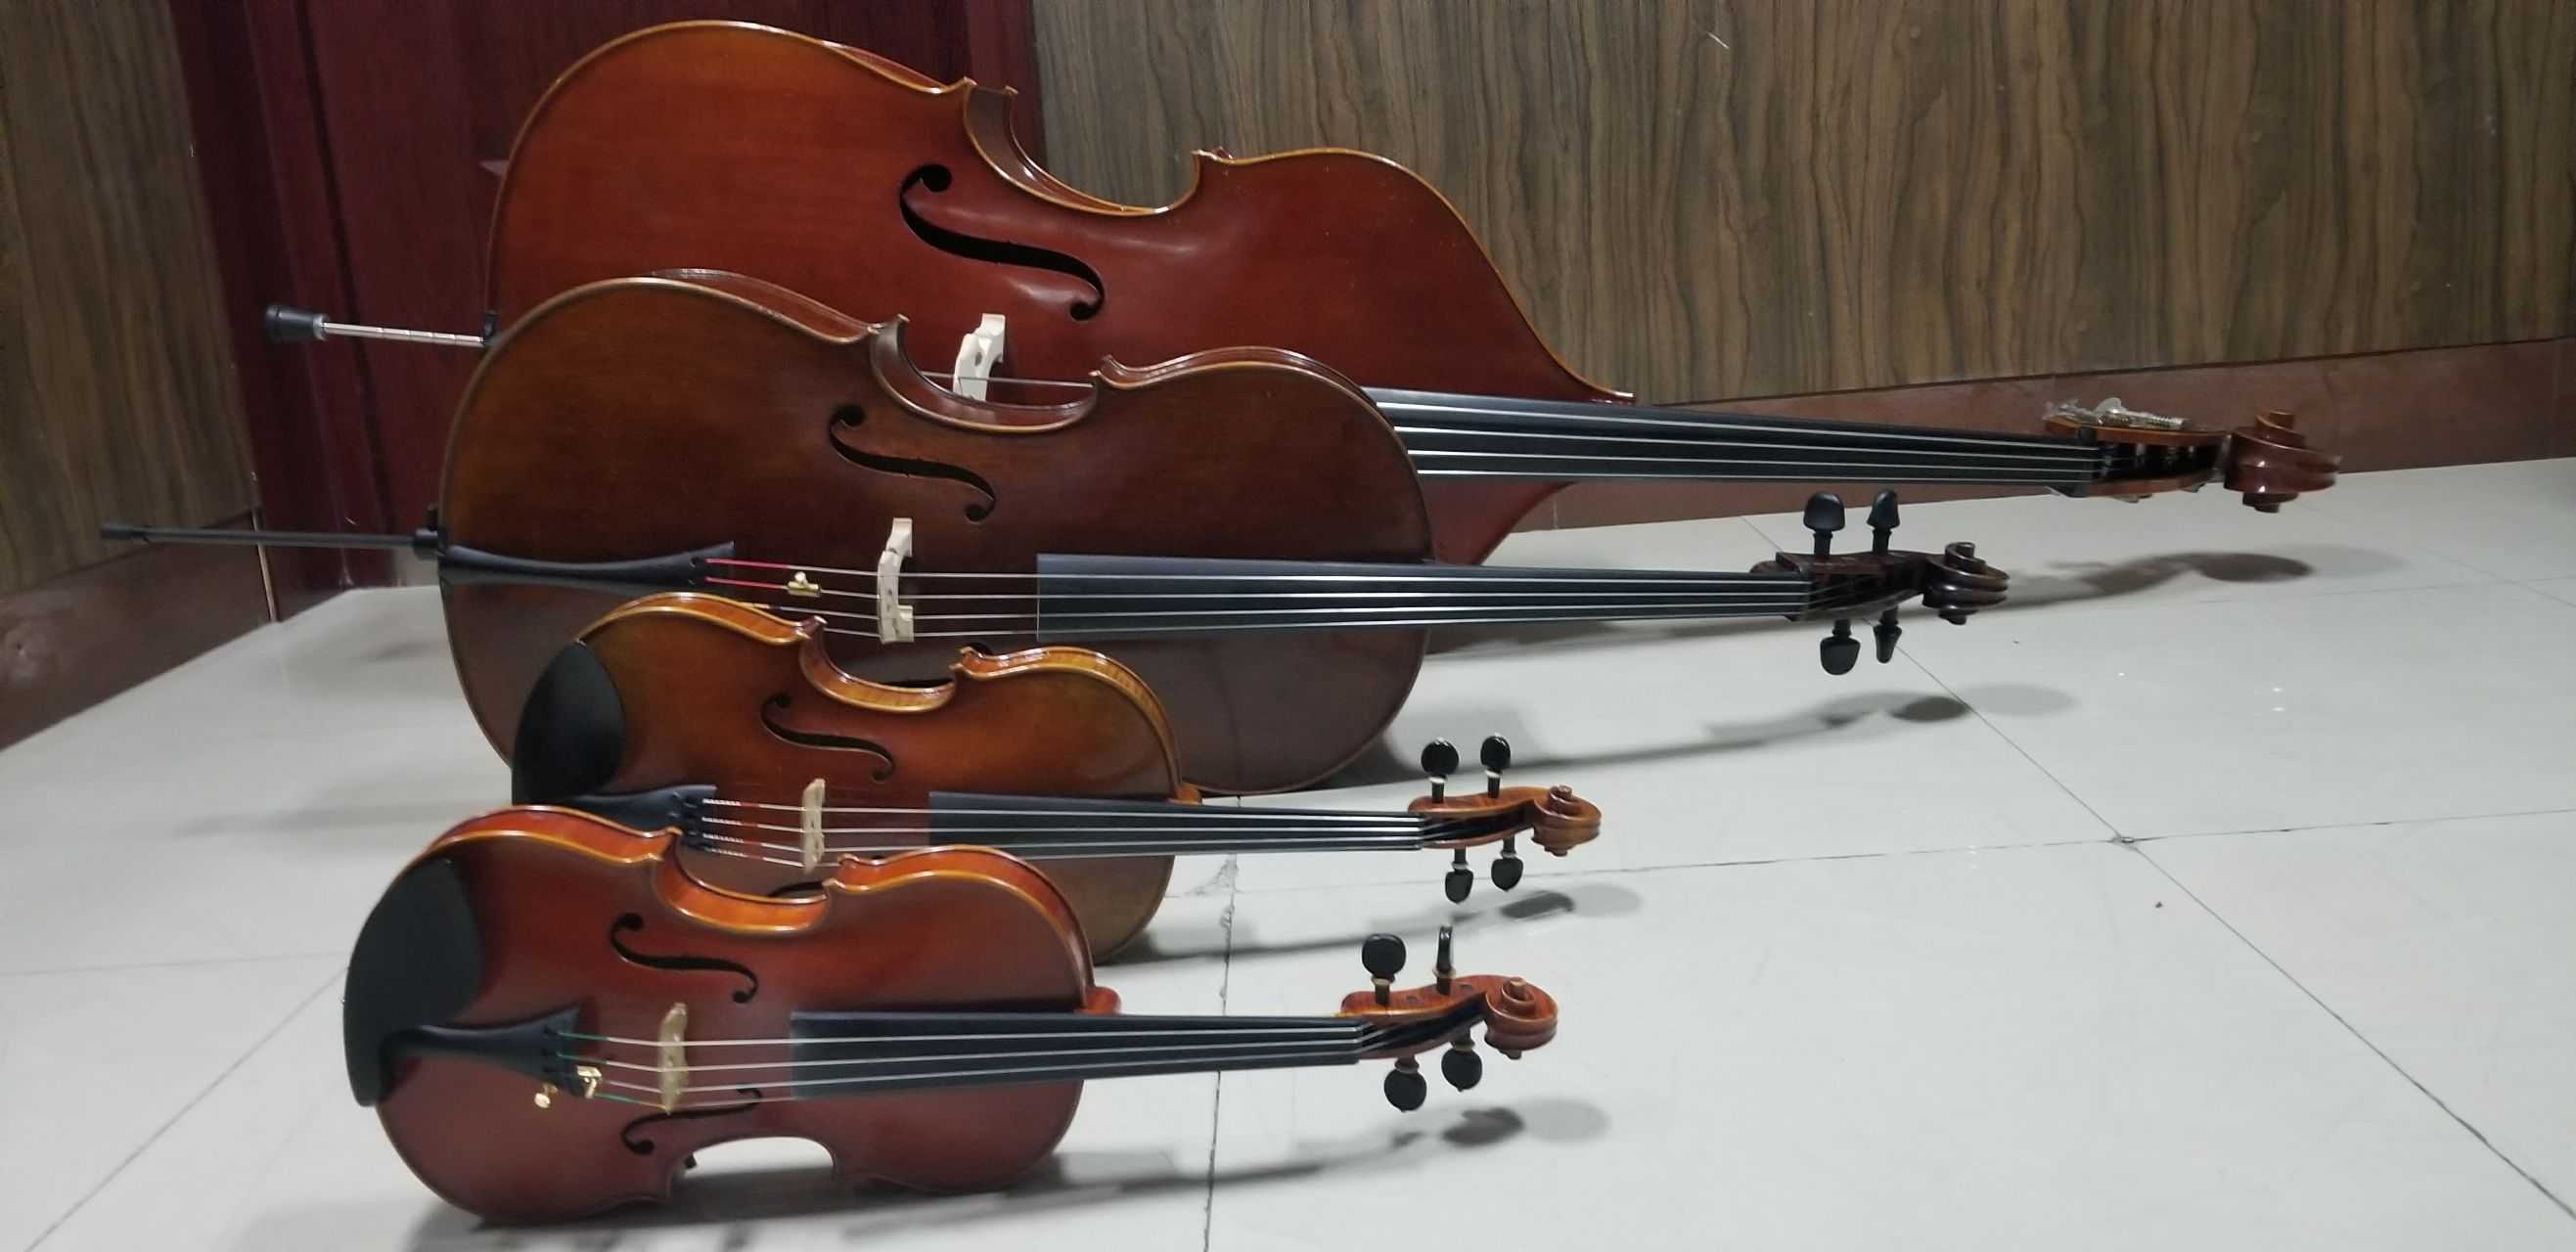 小提琴,中提琴,大提琴,低音提琴直观对比